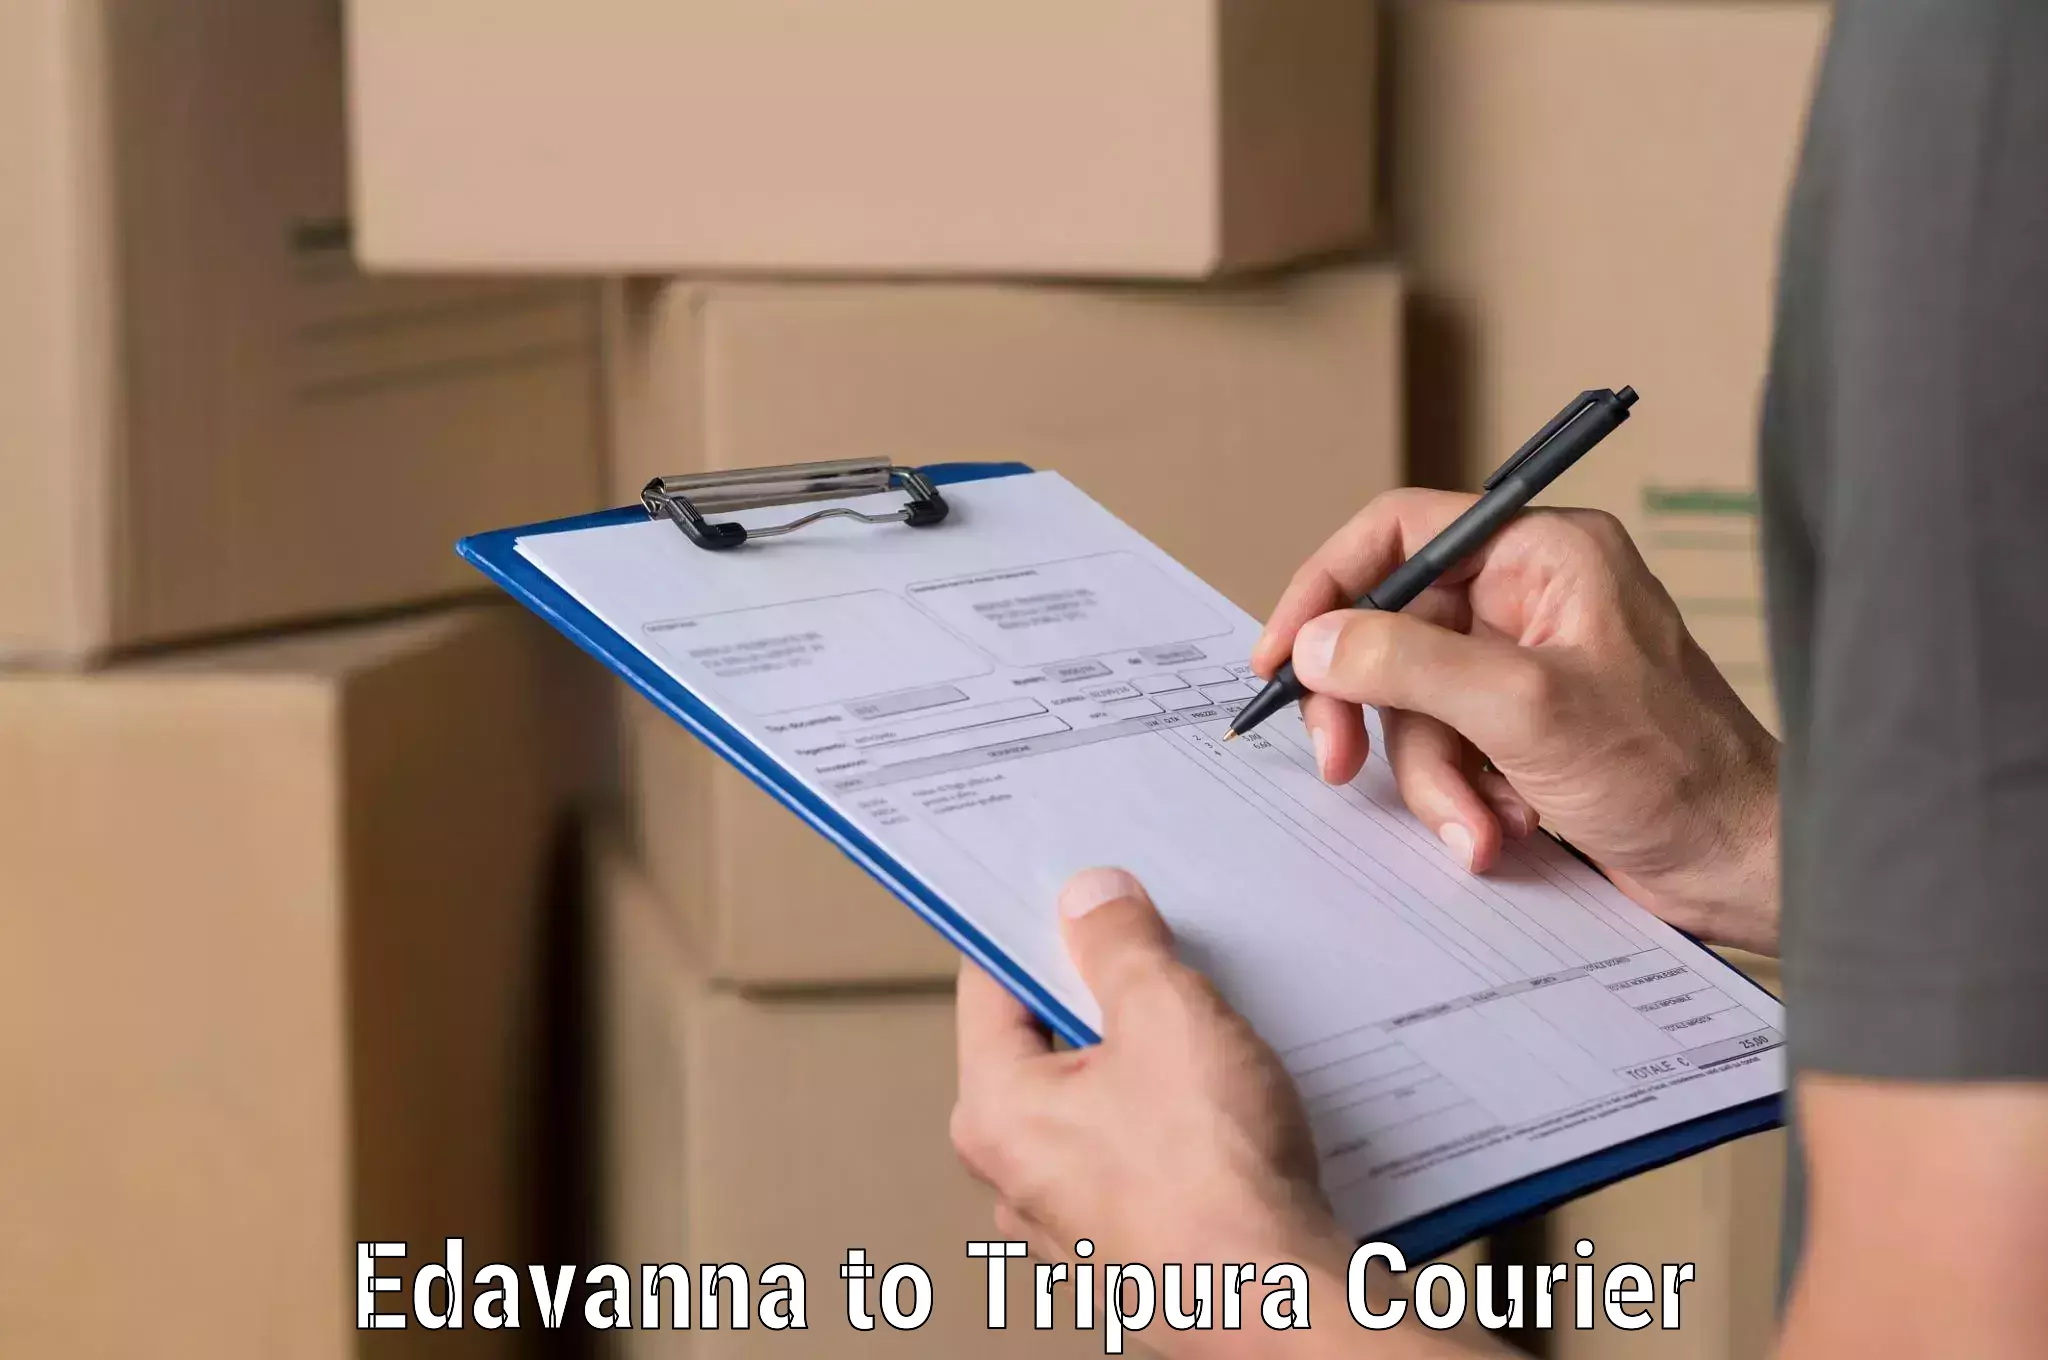 E-commerce logistics support Edavanna to Tripura